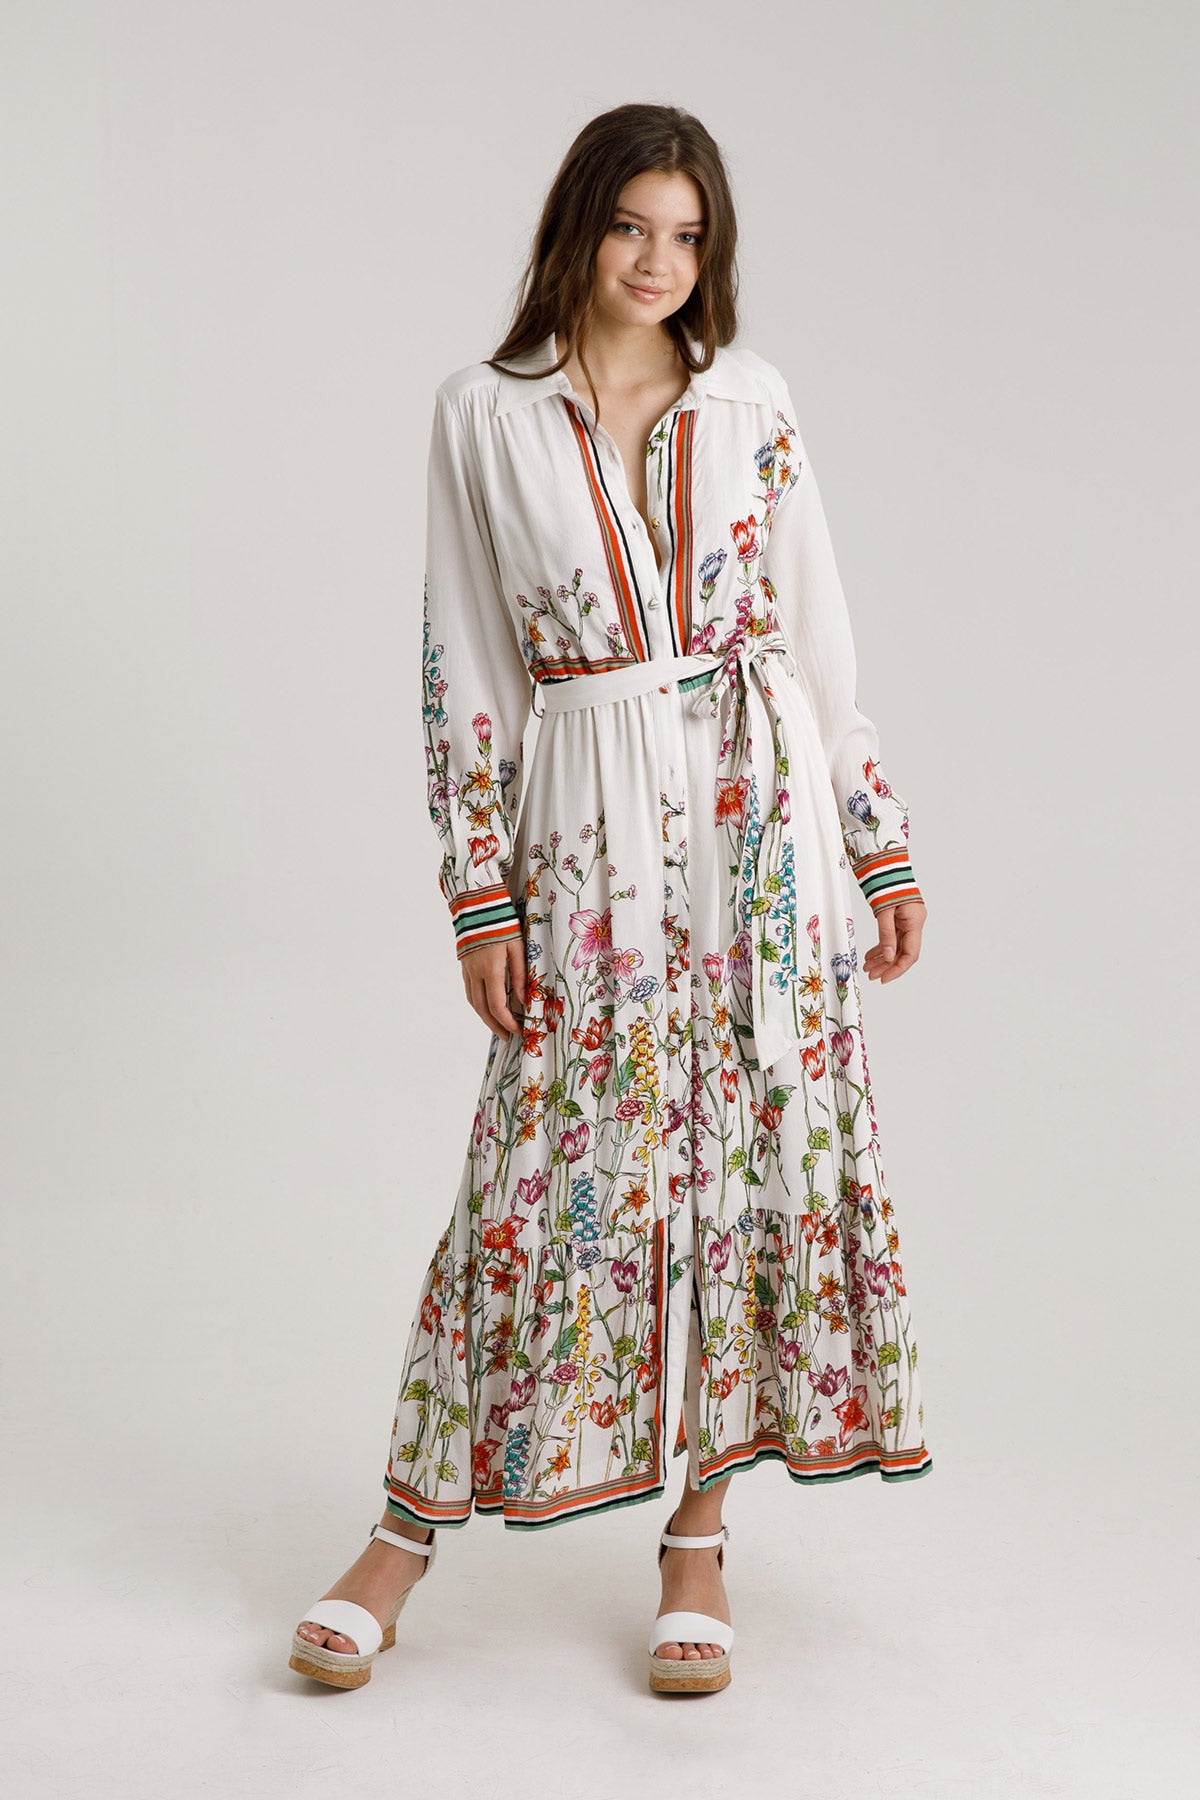 Rene Derhy Klasik Yaka Belden Bağlamalı Maxi Elbise-Libas Trendy Fashion Store